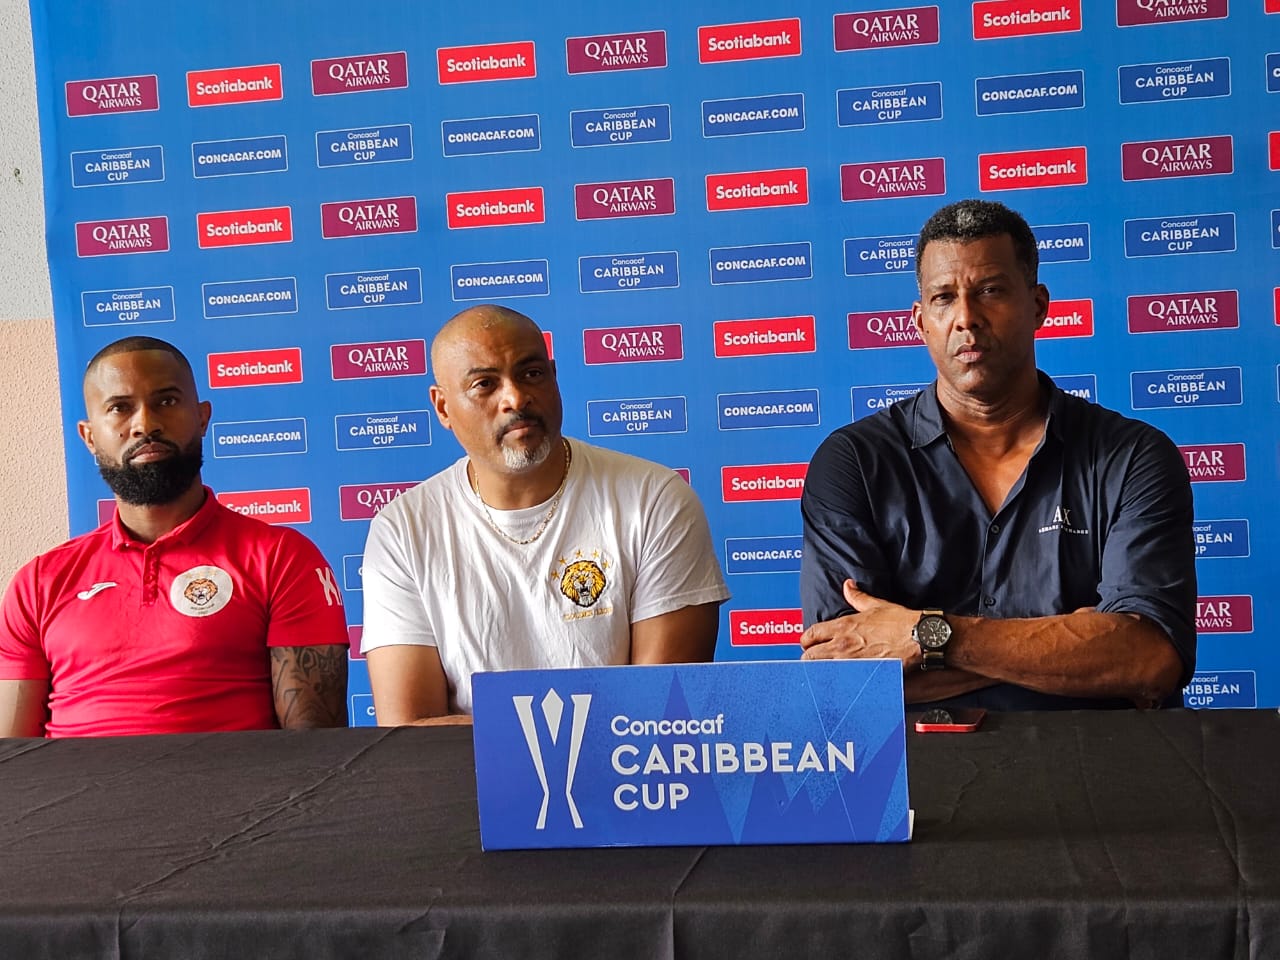     Le Golden Lion affronte Defence Force de Trinidad en Coupe caribéenne de la Concacaf

